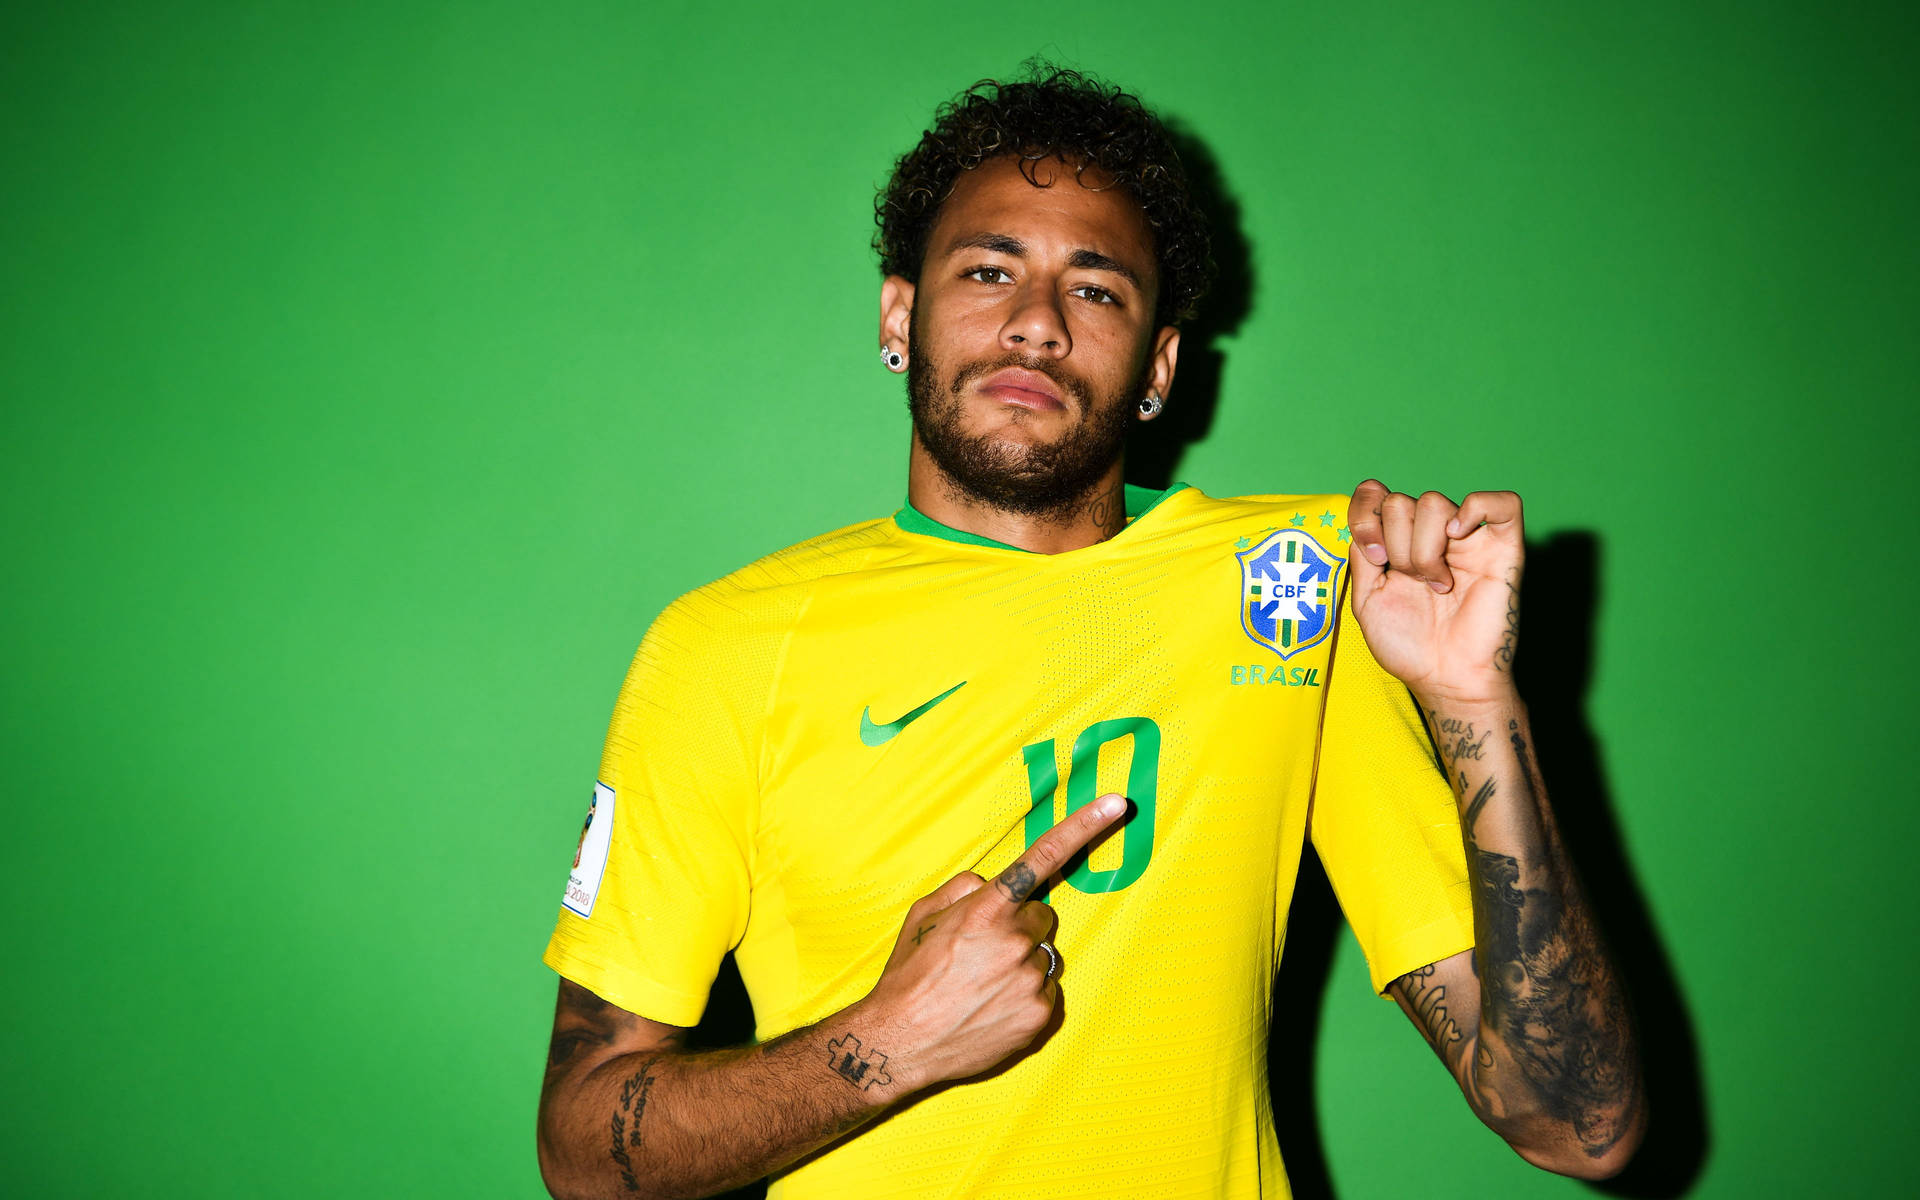 Brasiliensnationalfotbollslag Neymar Flexing-tröja. Wallpaper